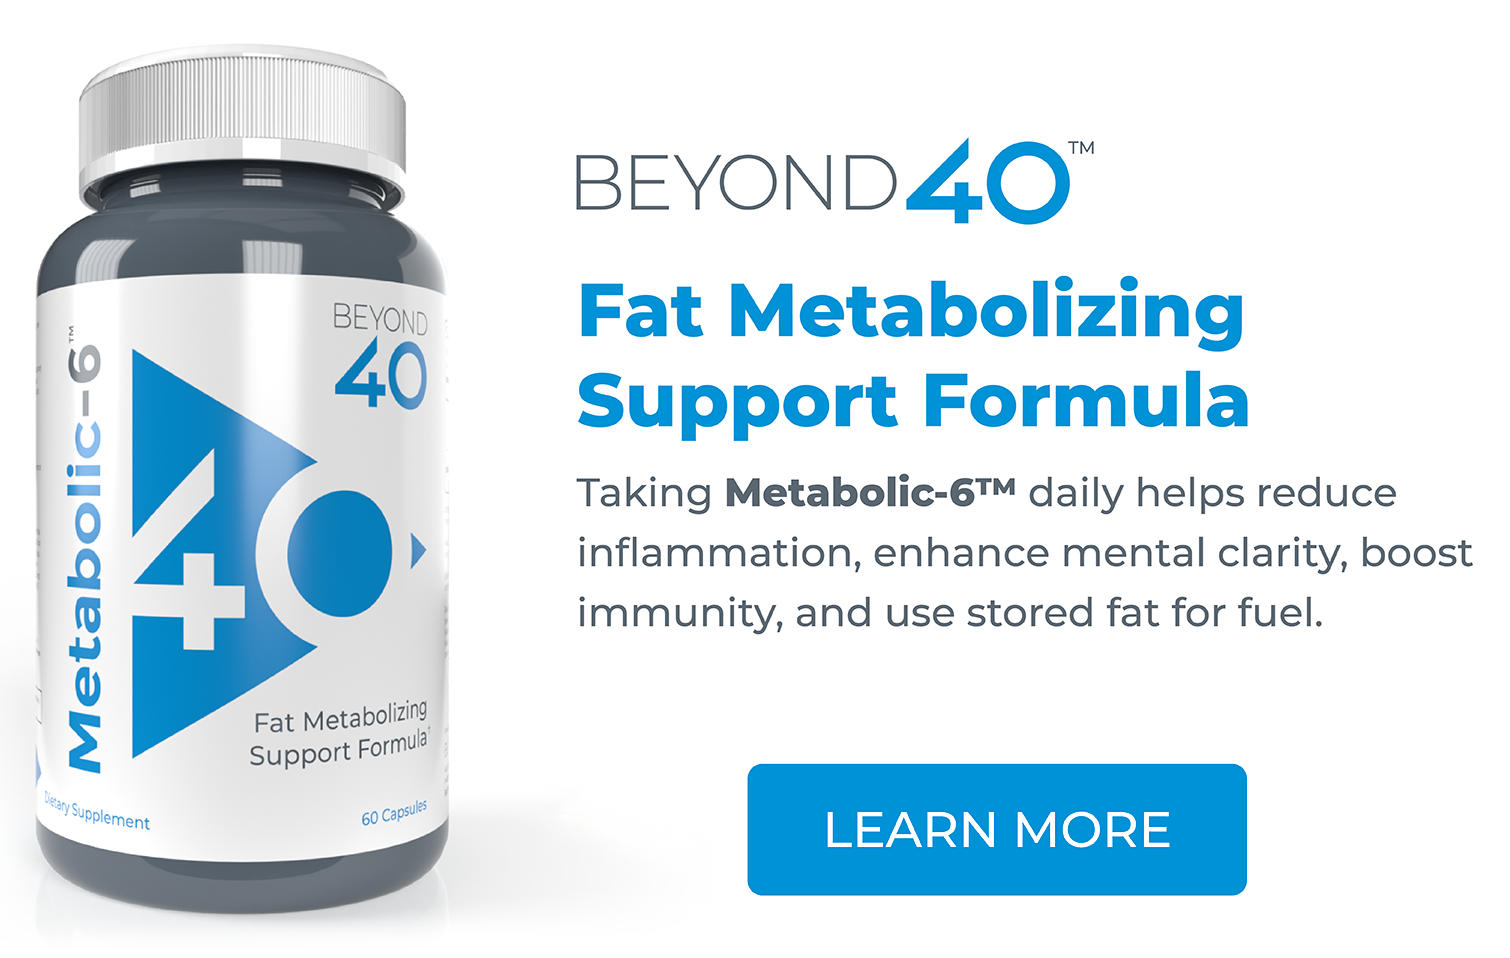 Beyond 40 Metabolic 6